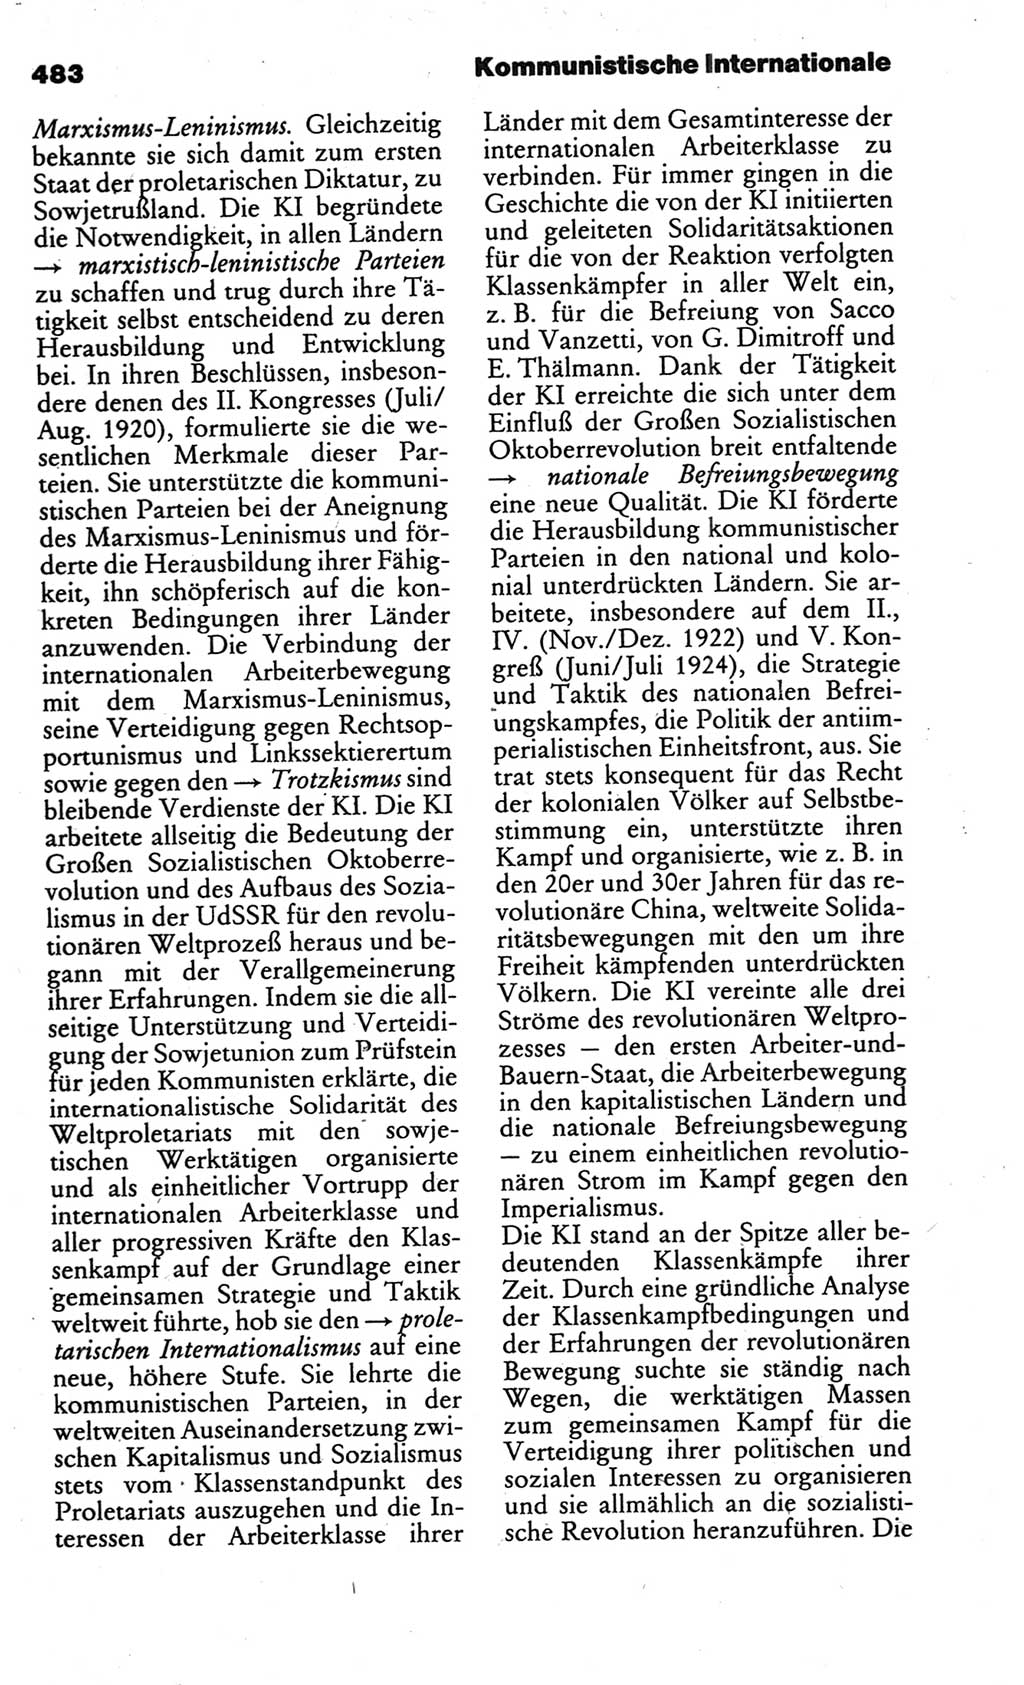 Kleines politisches Wörterbuch [Deutsche Demokratische Republik (DDR)] 1986, Seite 483 (Kl. pol. Wb. DDR 1986, S. 483)